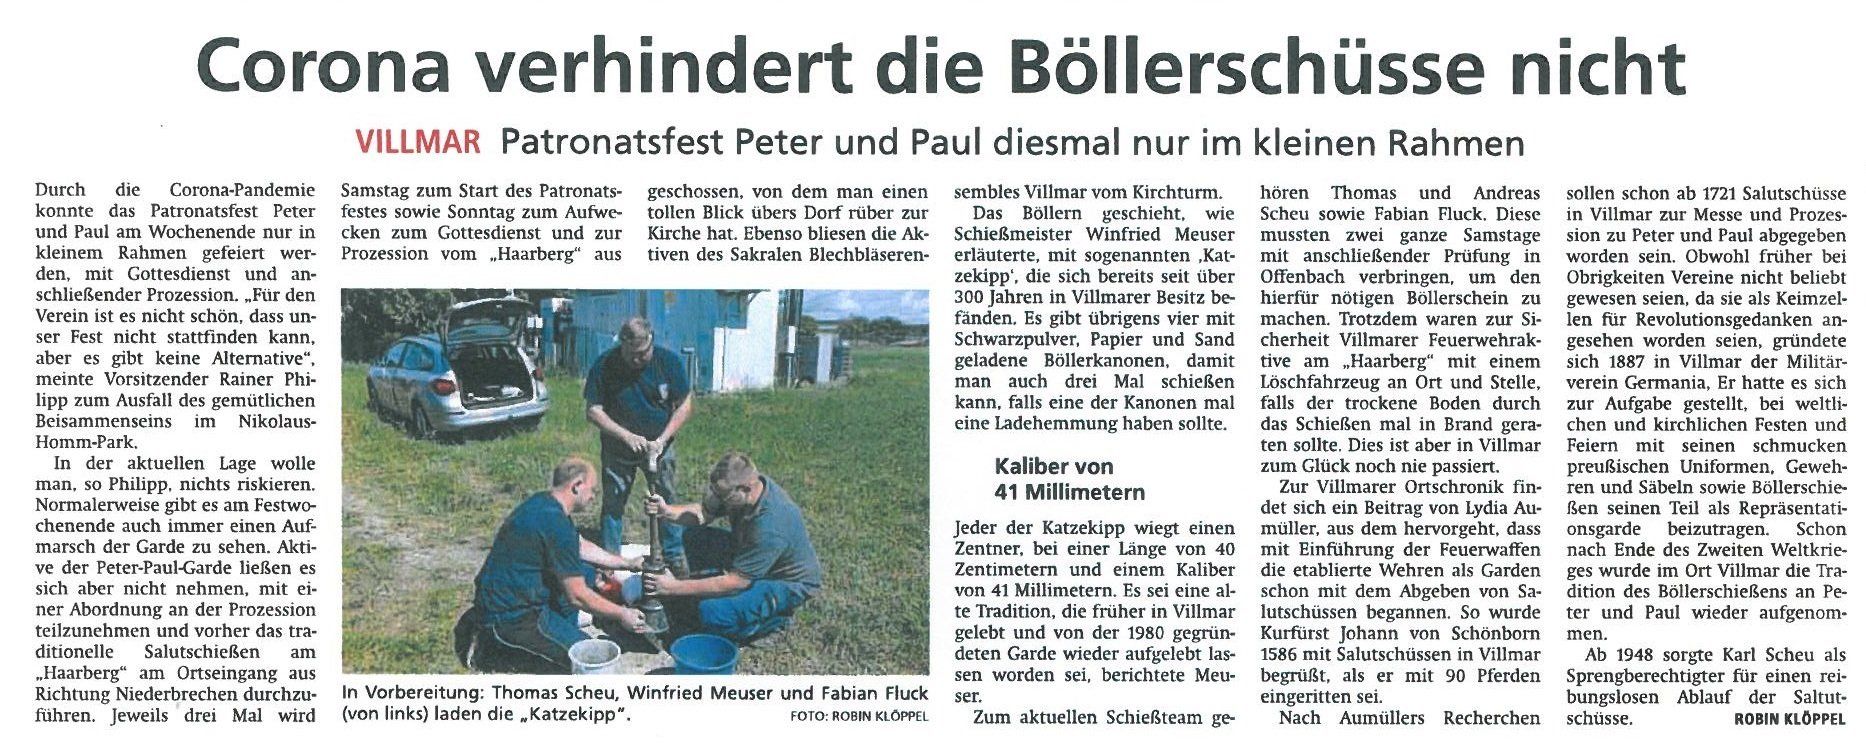 Bericht Nassauische Neue Presse v. 30.06.2020